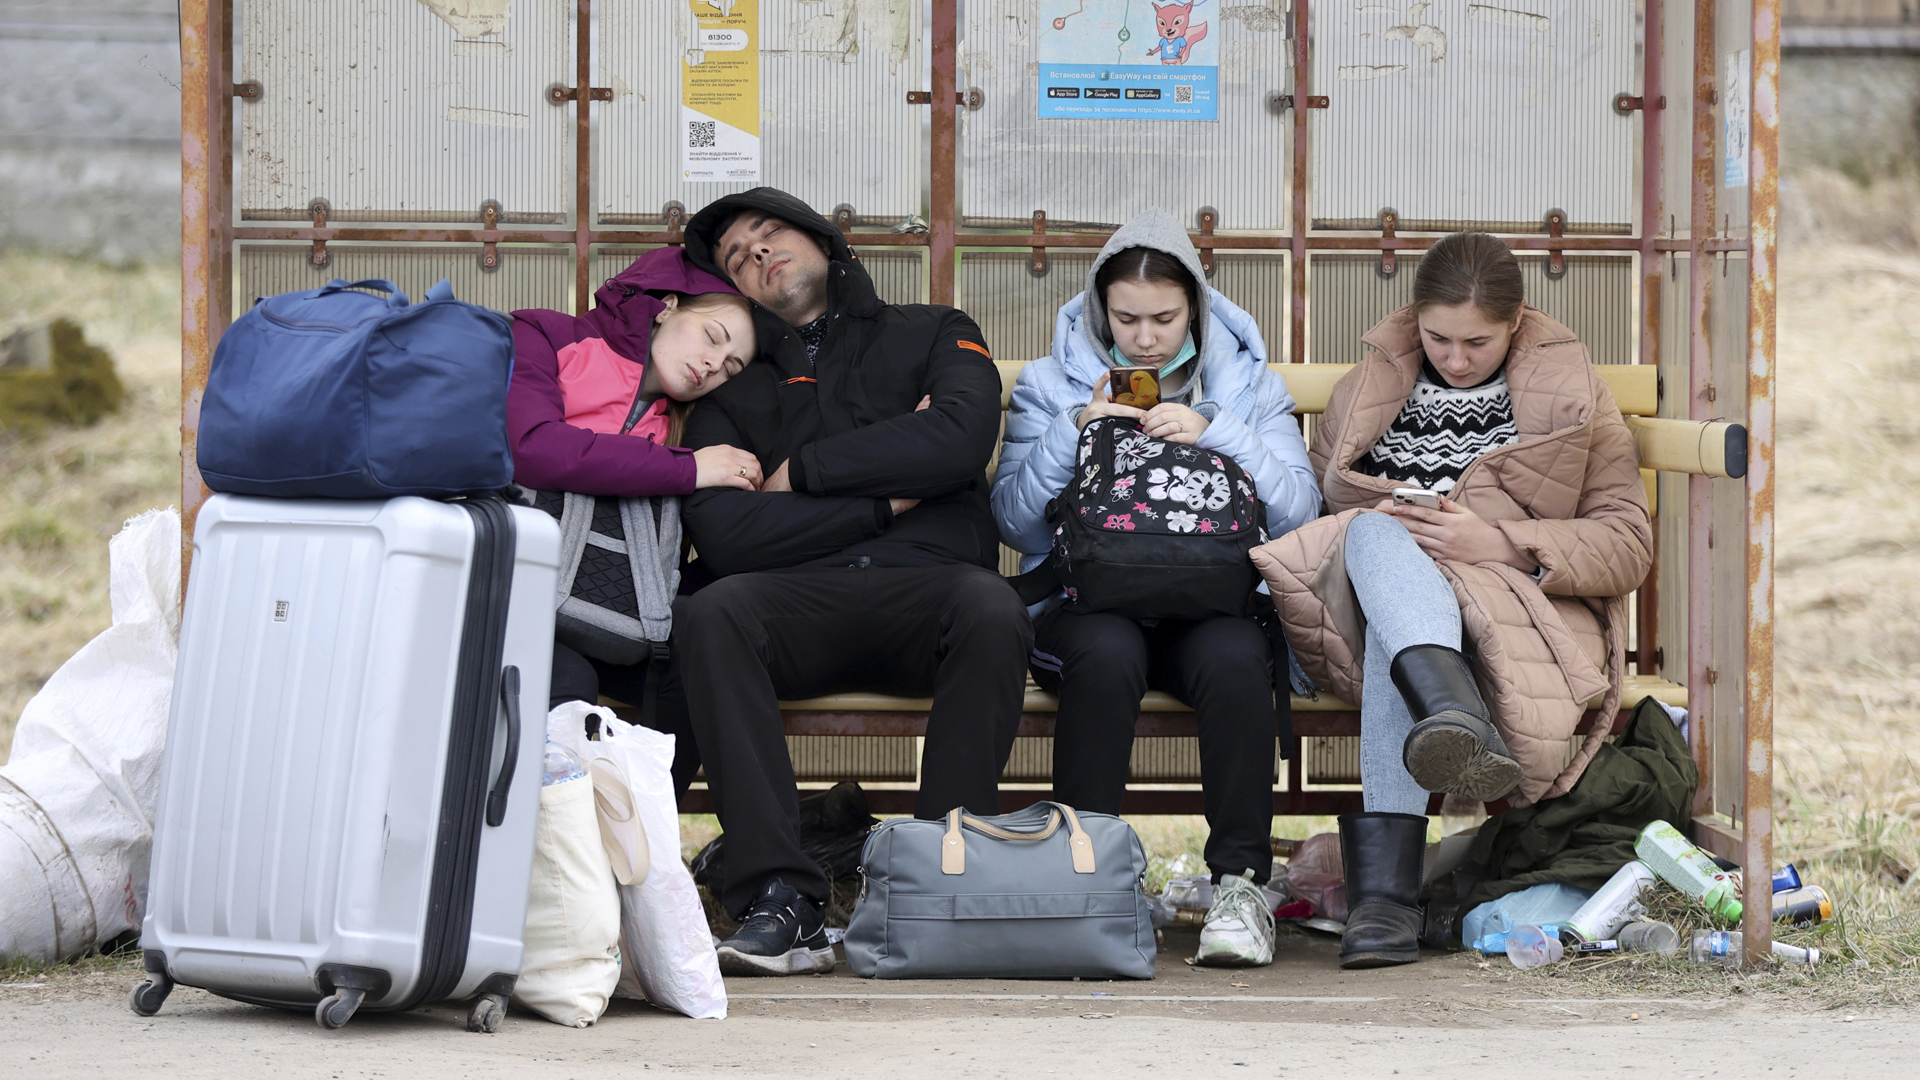 Eine Gruppe von Flüchtenden, die unterwegs zur polnischen Grenze ist, legt in der Oblast von Lwiw eine Ruhepause ein. | picture alliance / ASSOCIATED PR